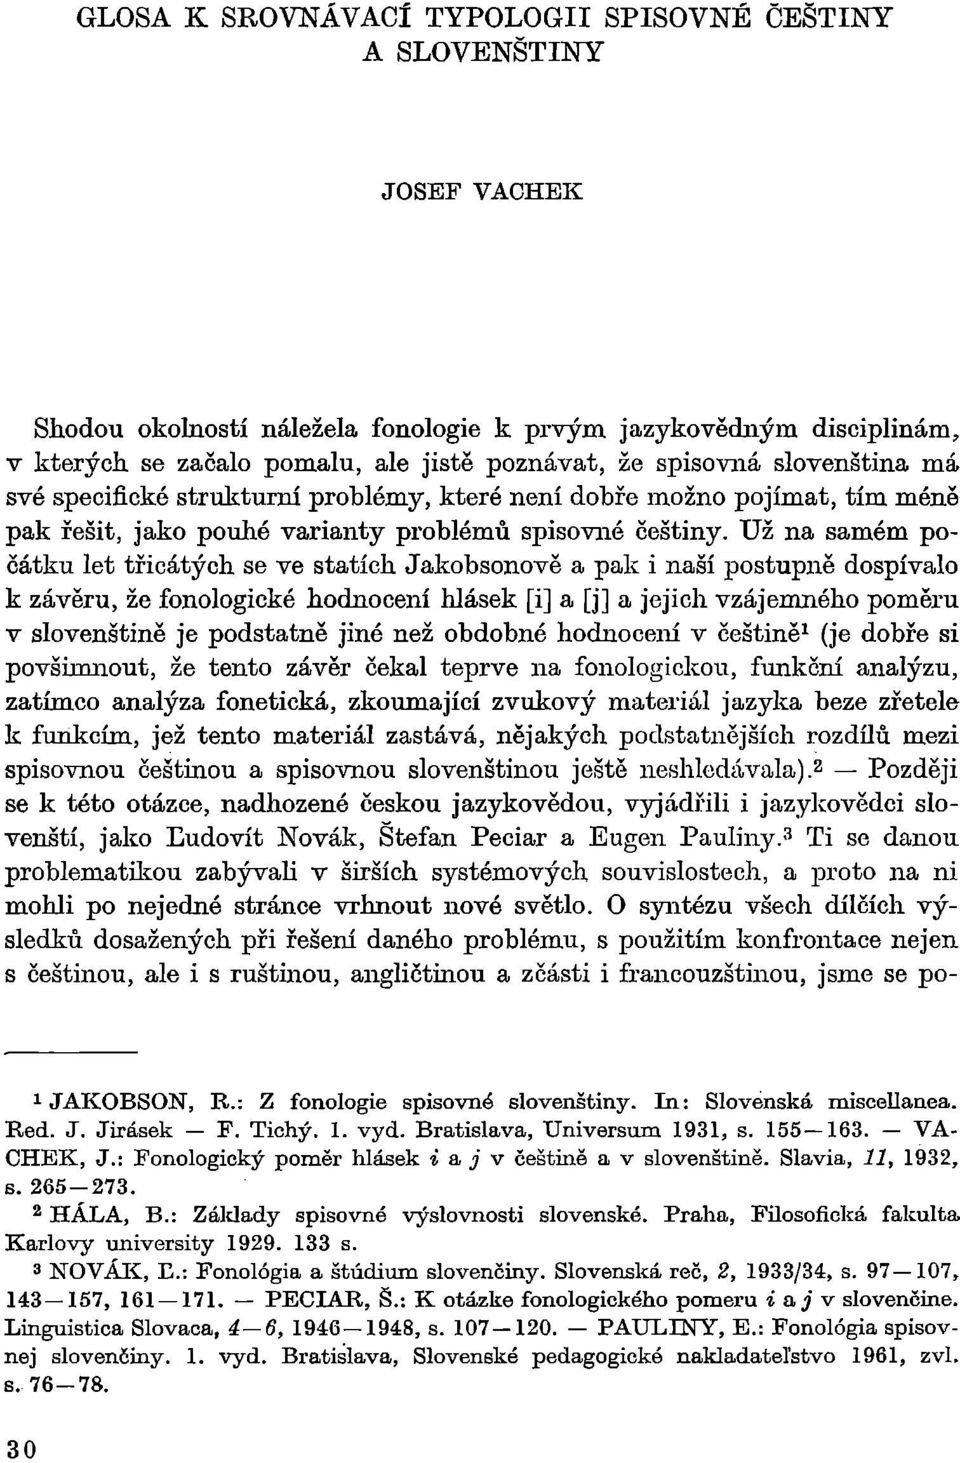 Už na samém počátku let třicátých se ve statích Jakobsonově a pak i naší postupně dospívalo k závěru, že fonologické hodnocení hlásek [i] a [j] a jejich vzájemného poměru v slovenštině je podstatně